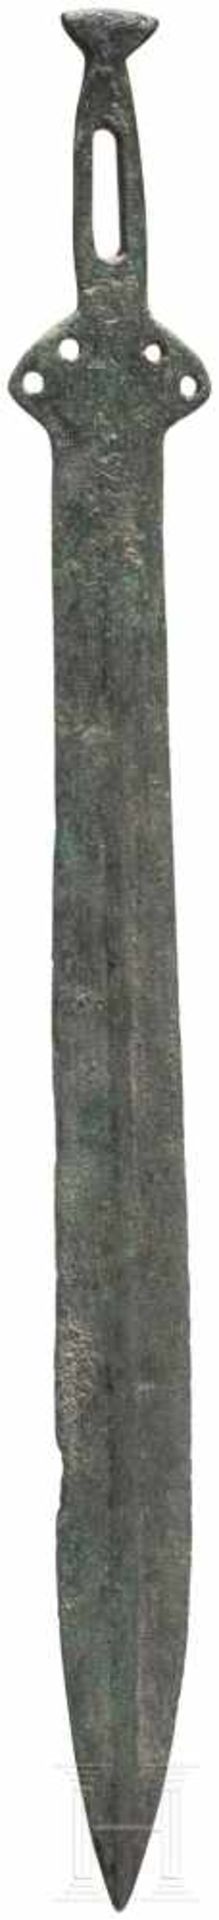 Griffzungenschwert, Frankreich, Späte Bronzezeit, 11. - 10. Jhdt. v. Chr.Bronze. Die Klinge des - Bild 2 aus 4